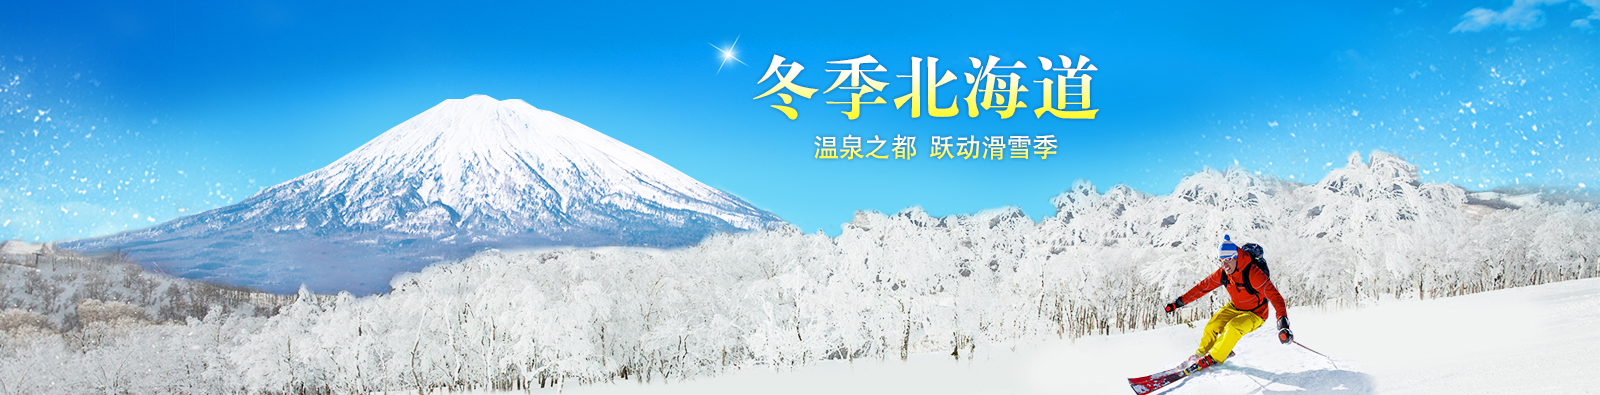 冬季北海道_温泉之都_跃动滑雪季